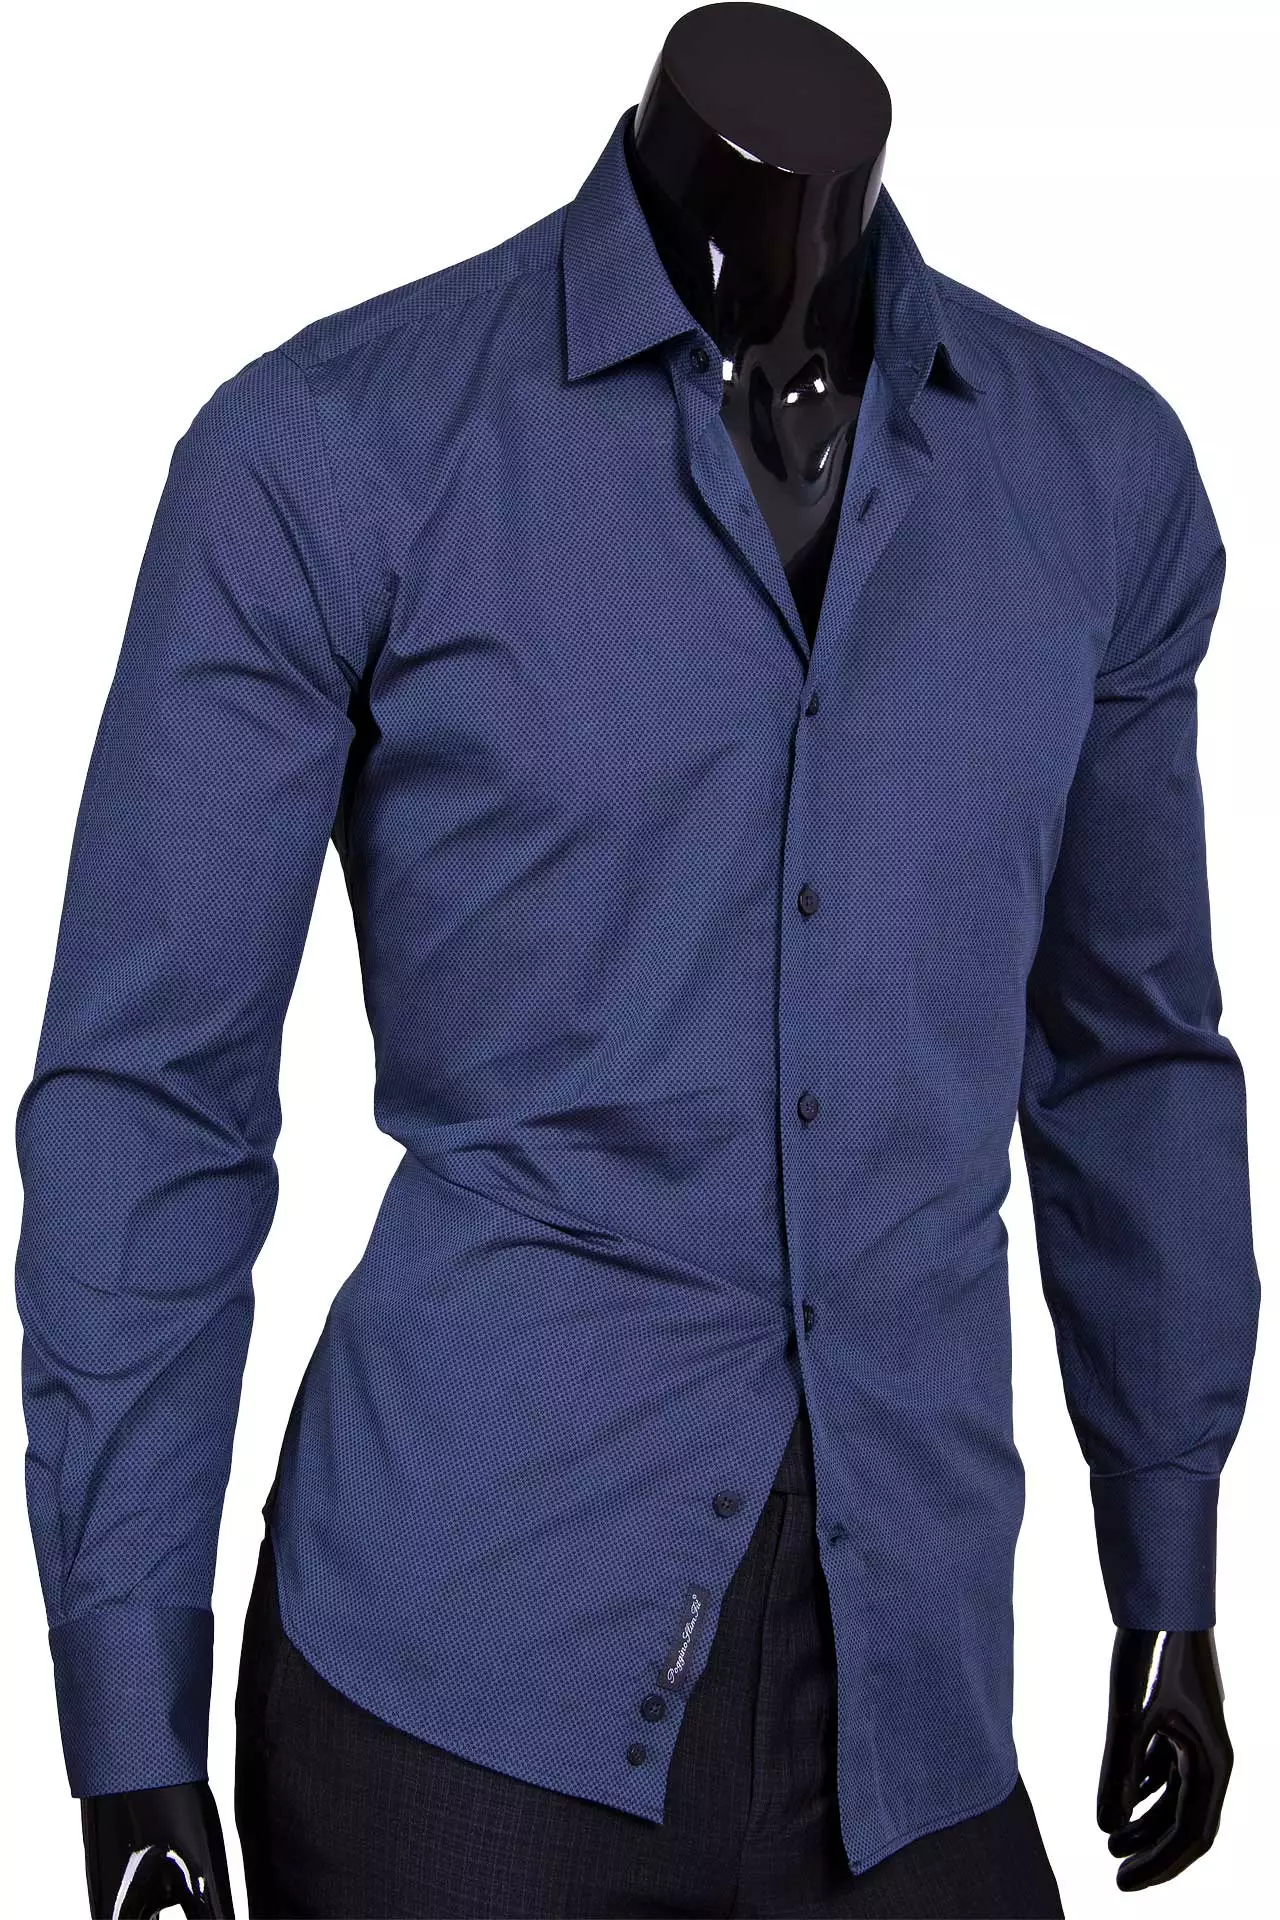 Рубашка приталенная темно синего цвета в горошек